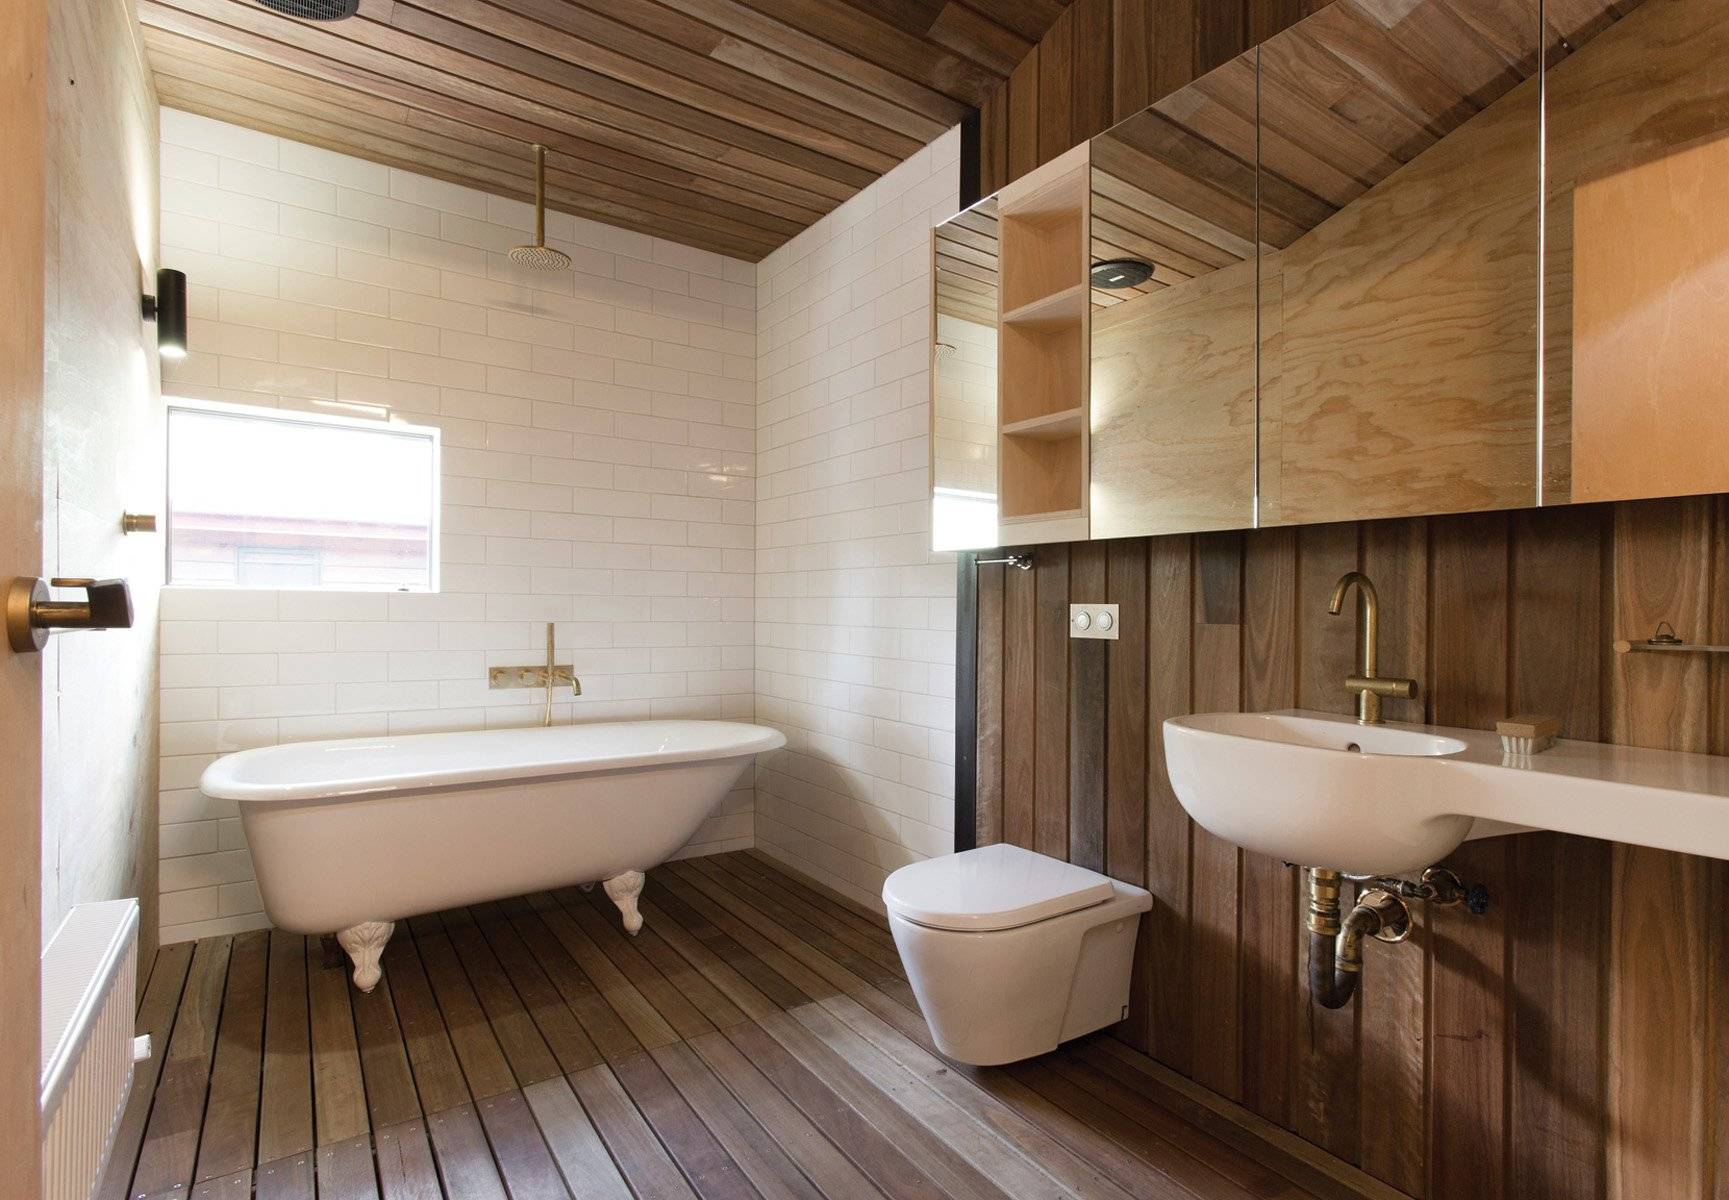 Отделка ванной комнаты в деревянном доме: пошаговая инструкция, фото-идеи